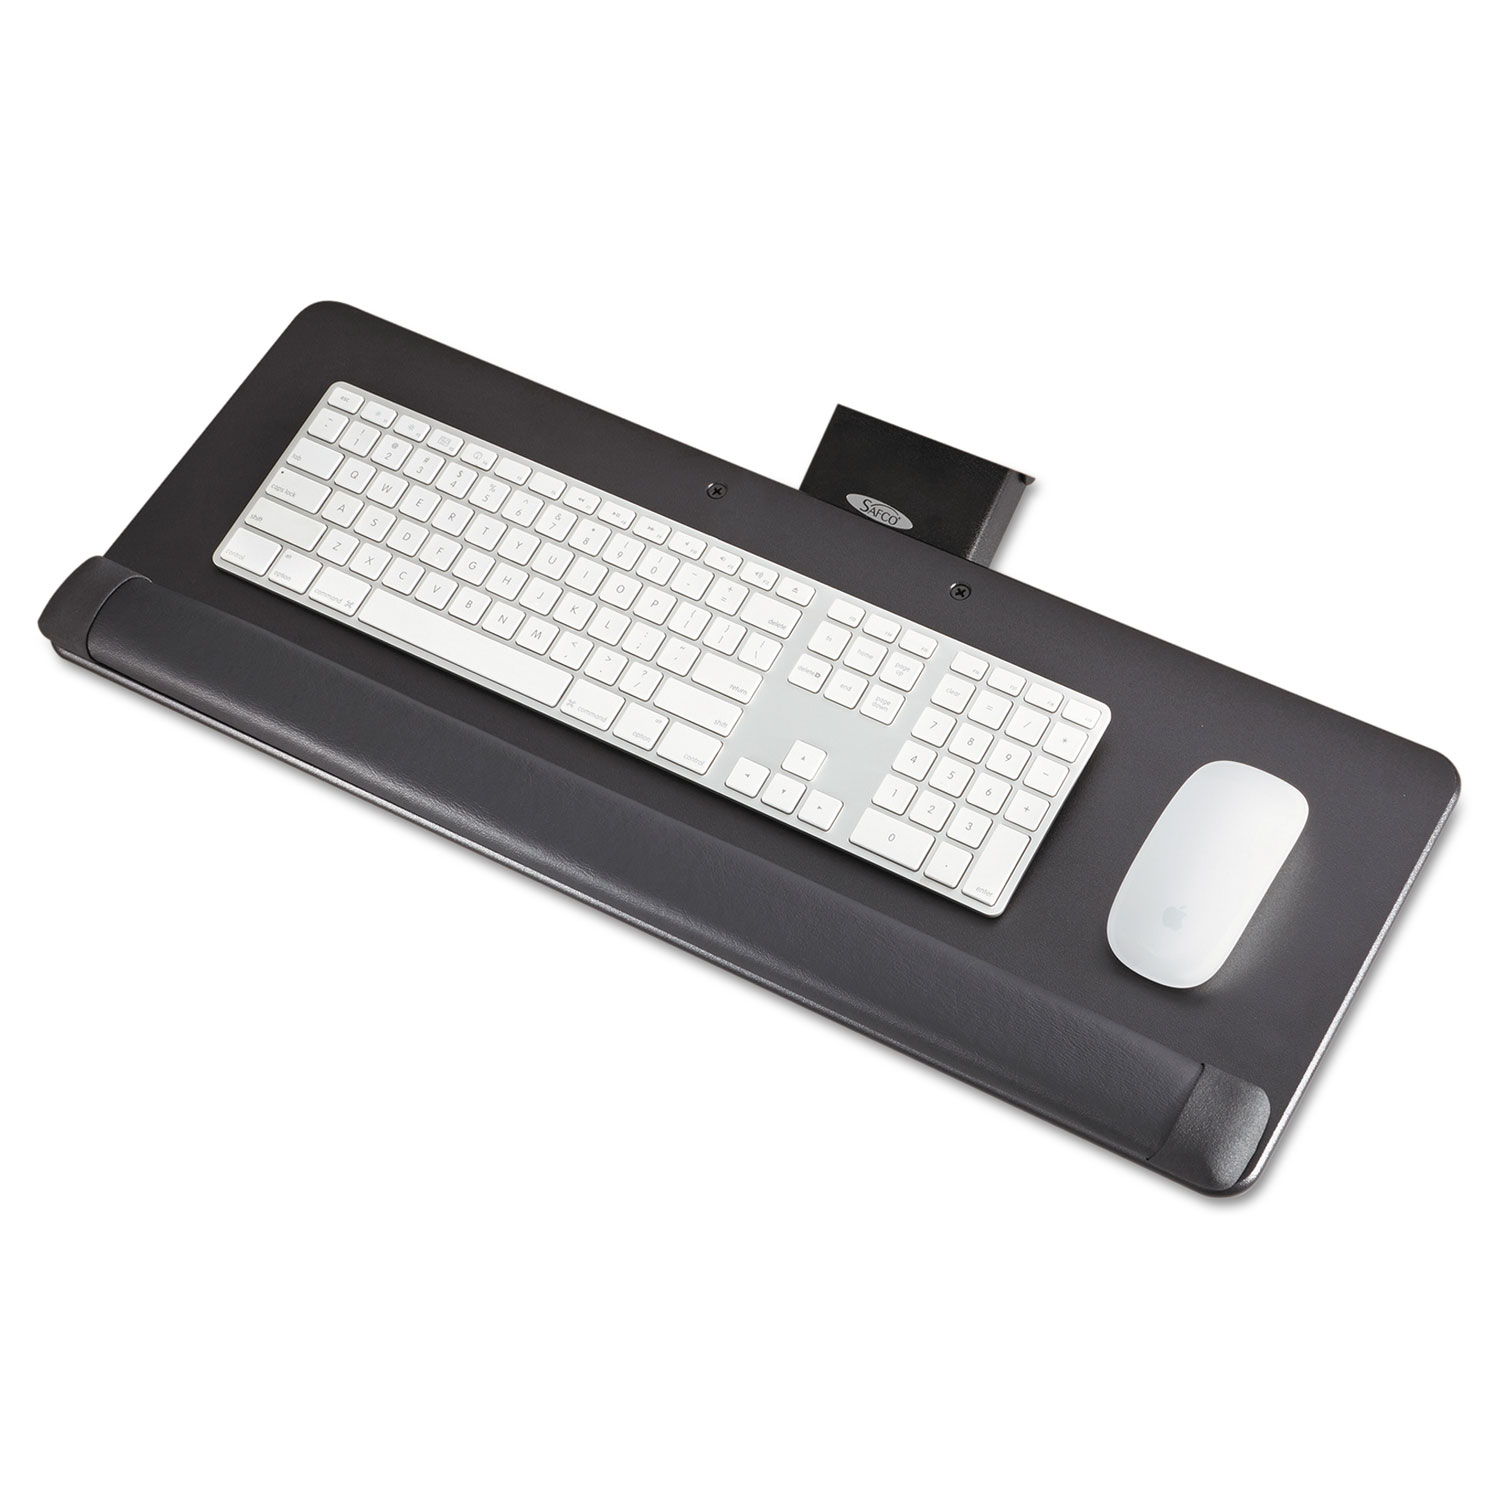  Safco 2133BL Knob-Adjust Keyboard Platform, 25w x 9.5d, Black (SAF2133BL) 